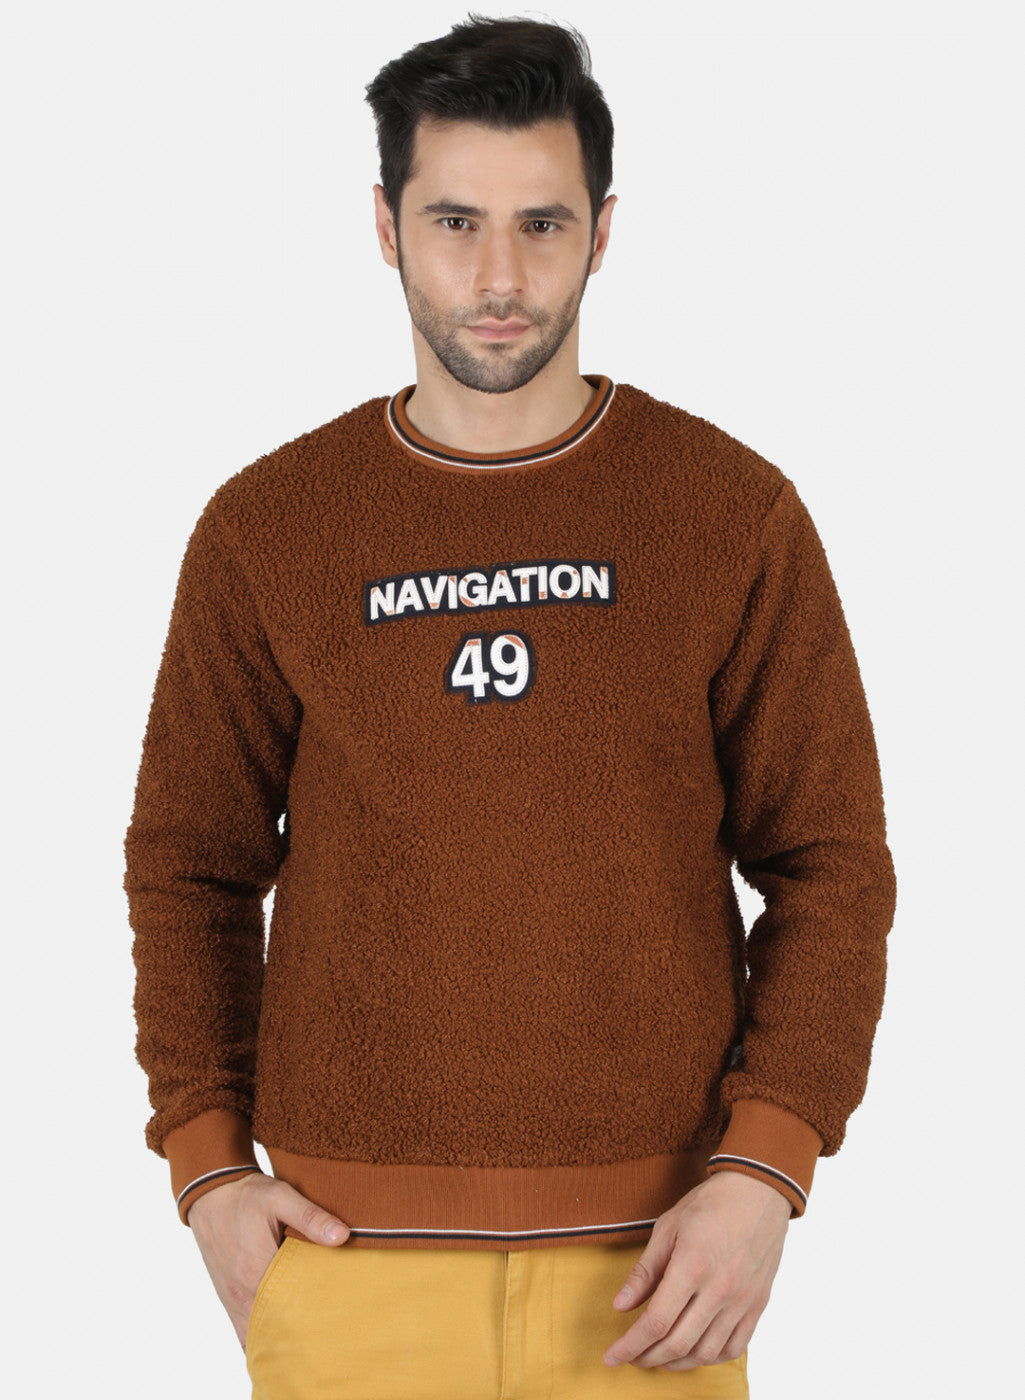 Buy Sweatshirts For Men Online - Gents Sweatshirts - Monte Carlo